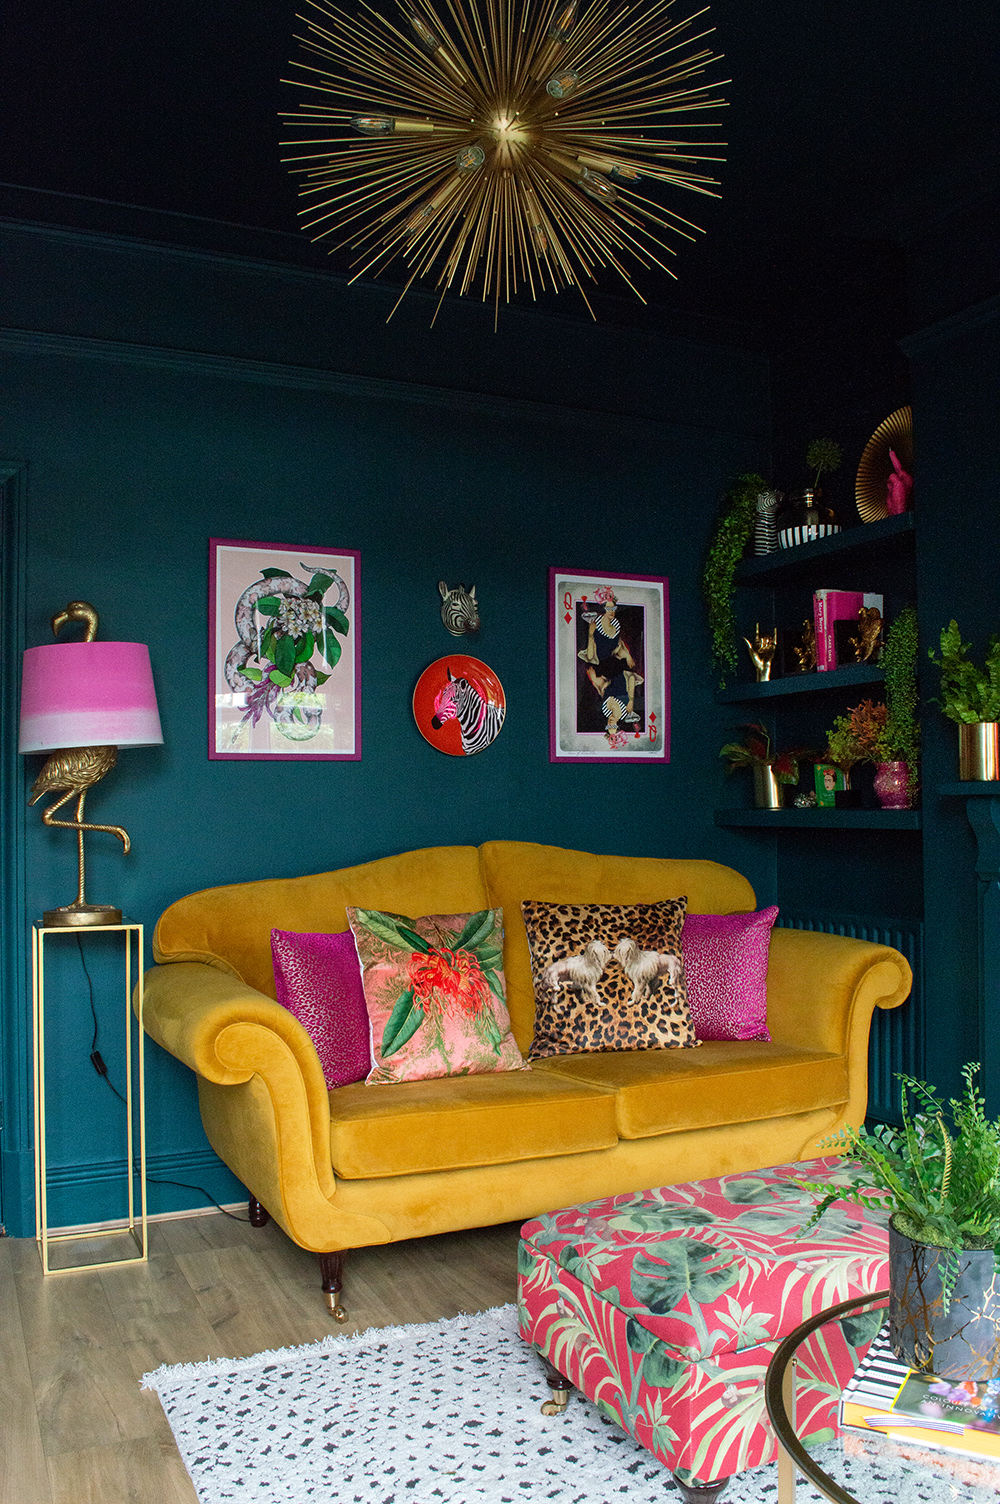 Moody living room decor with colourful artwork, mustard yellow velvet sofa and sunburst pendant light